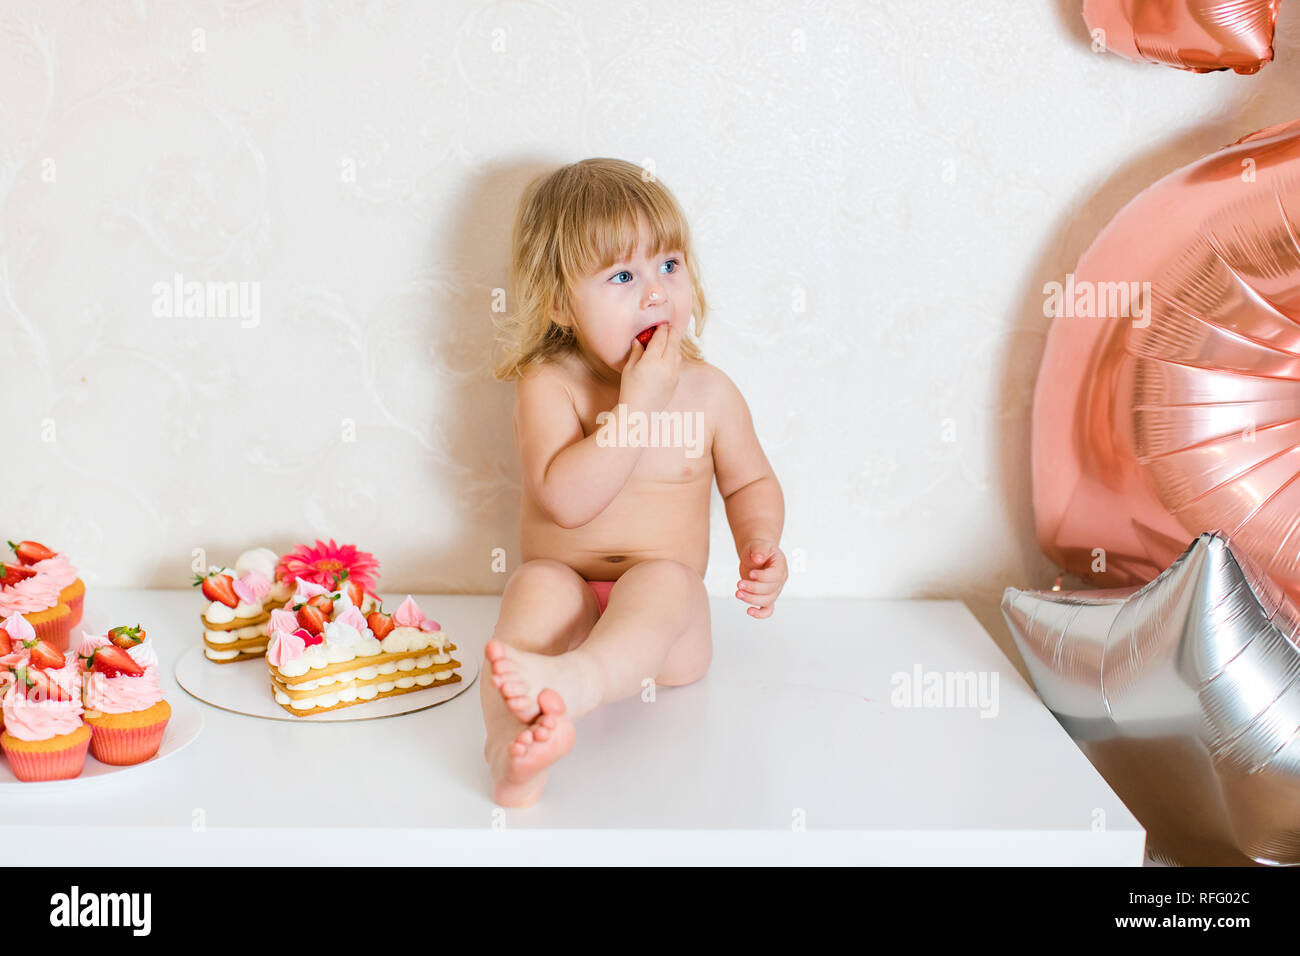 Petite blonde fille bébé deux ans en pantalon rose blanc assis sur la table près de son gâteau d'anniversaire et autre bonbons rose sur la table. Banque D'Images